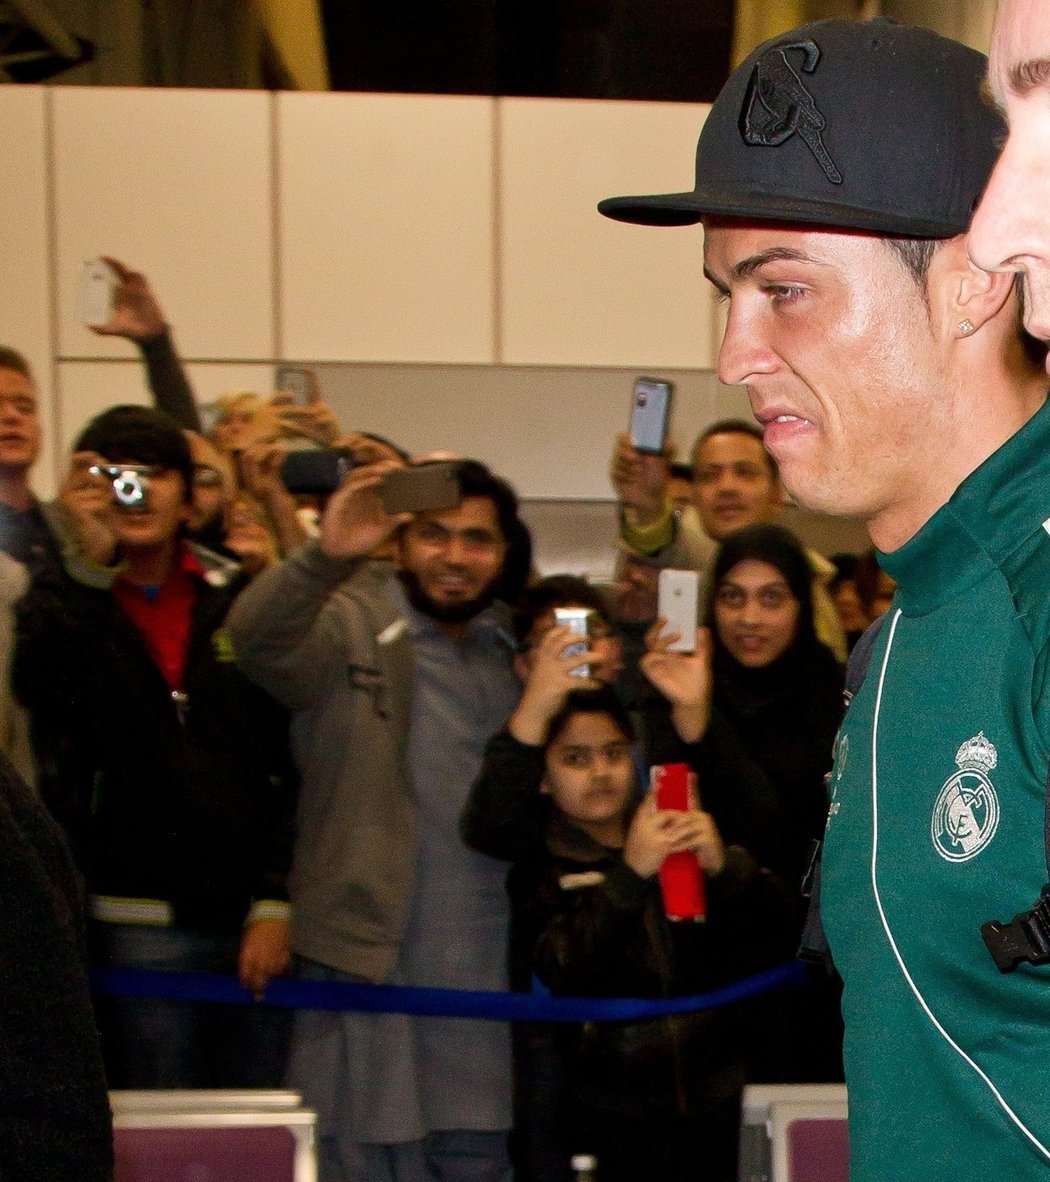 Cristiano Ronaldo přiletěl do Manchesteru v bílých podkolenkách.